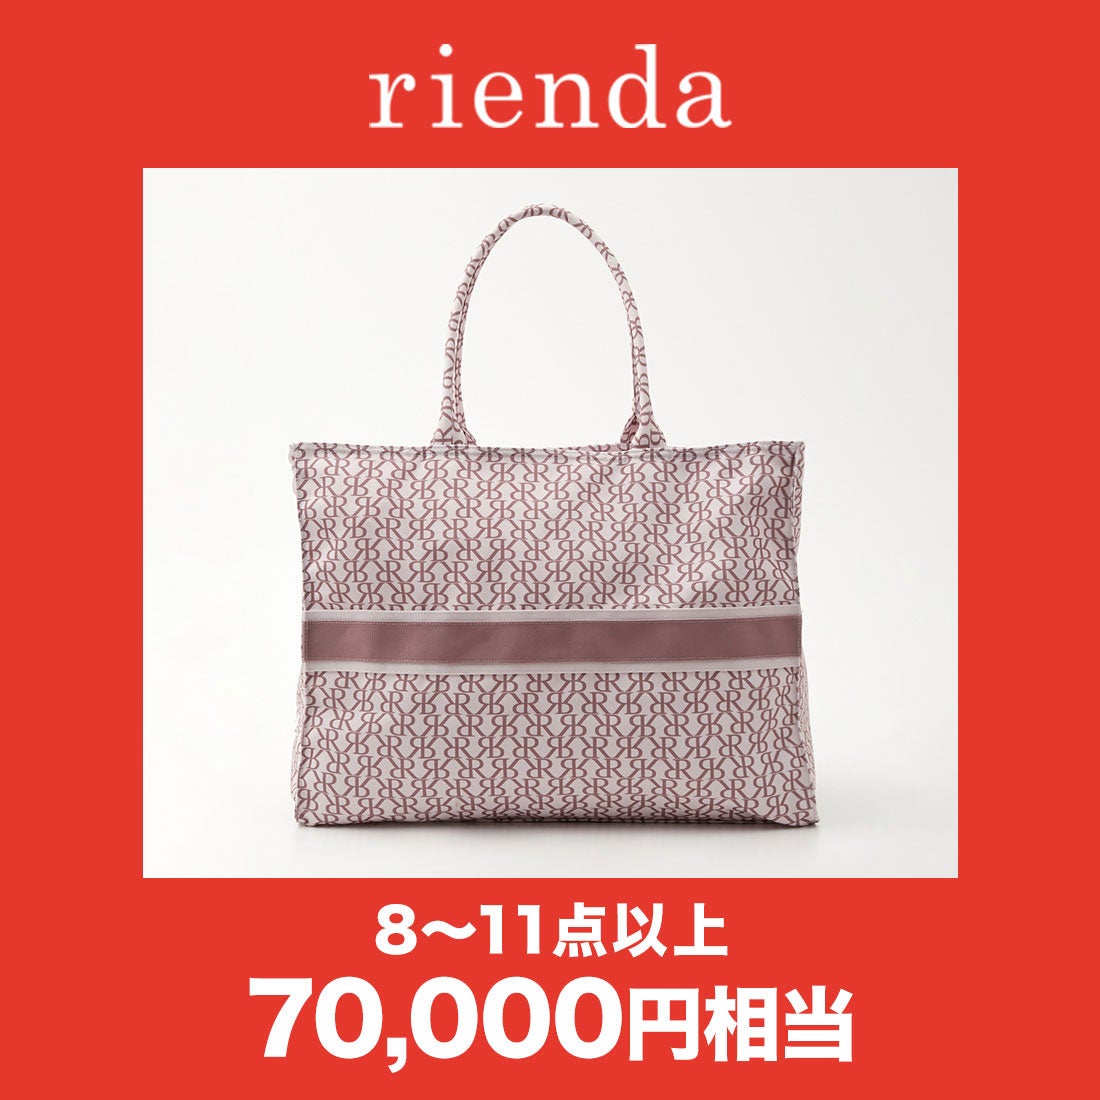 リエンダ rienda 【2022年福袋】2022 rienda HAPPY BAG【返品不可商品 